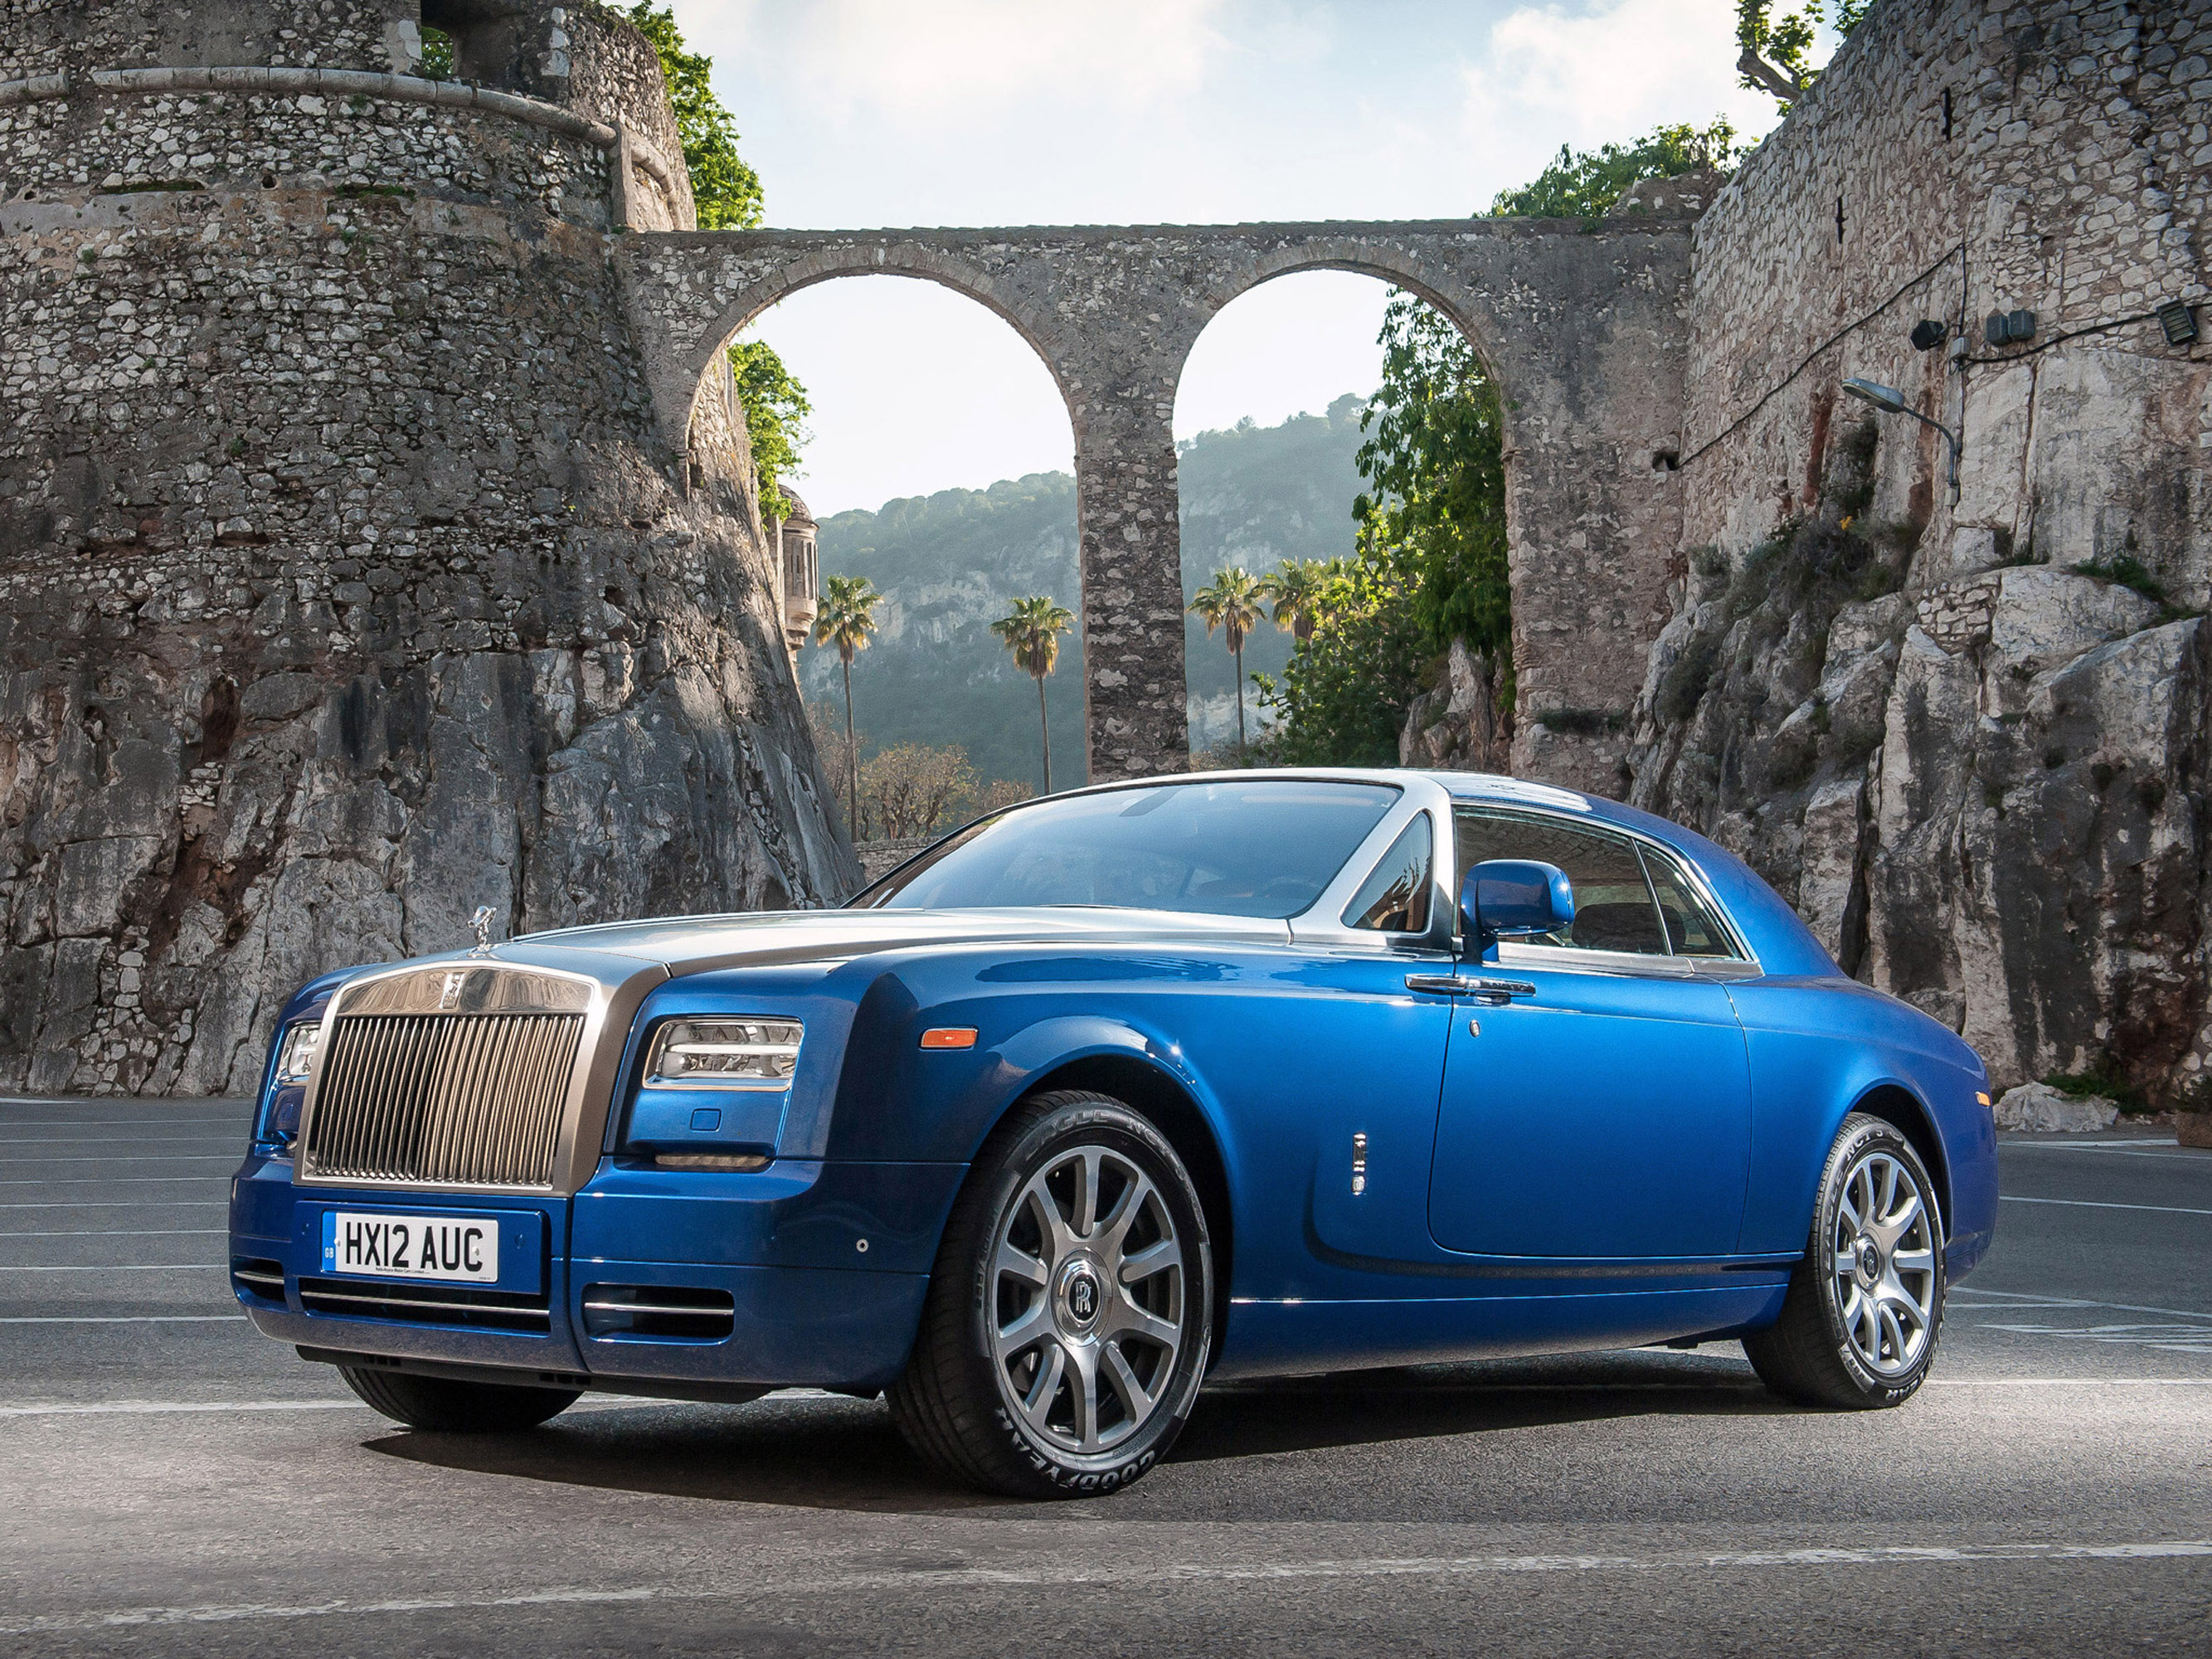 Rolls com. Машина Rolls Royce Phantom. Роллс Ройс купе. Rolls Royce Phantom Coupe 2012. Rolls Royce Phantom купе.